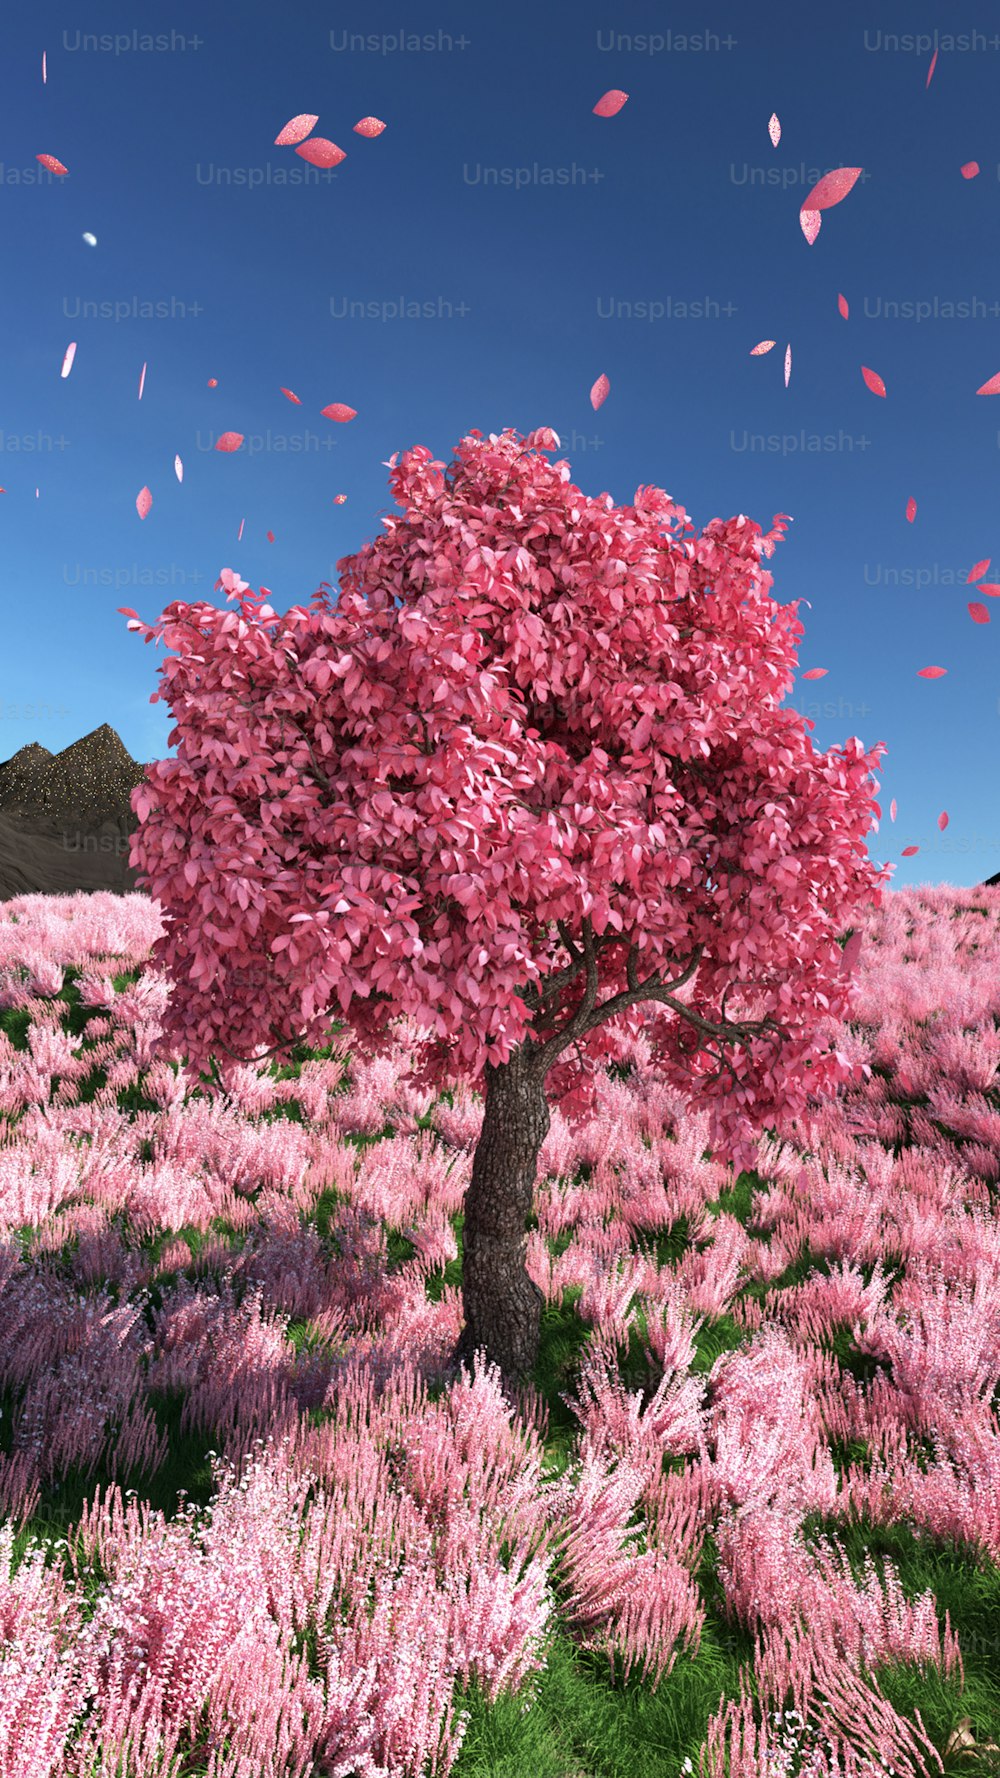 Un arbre rose dans un champ de fleurs violettes